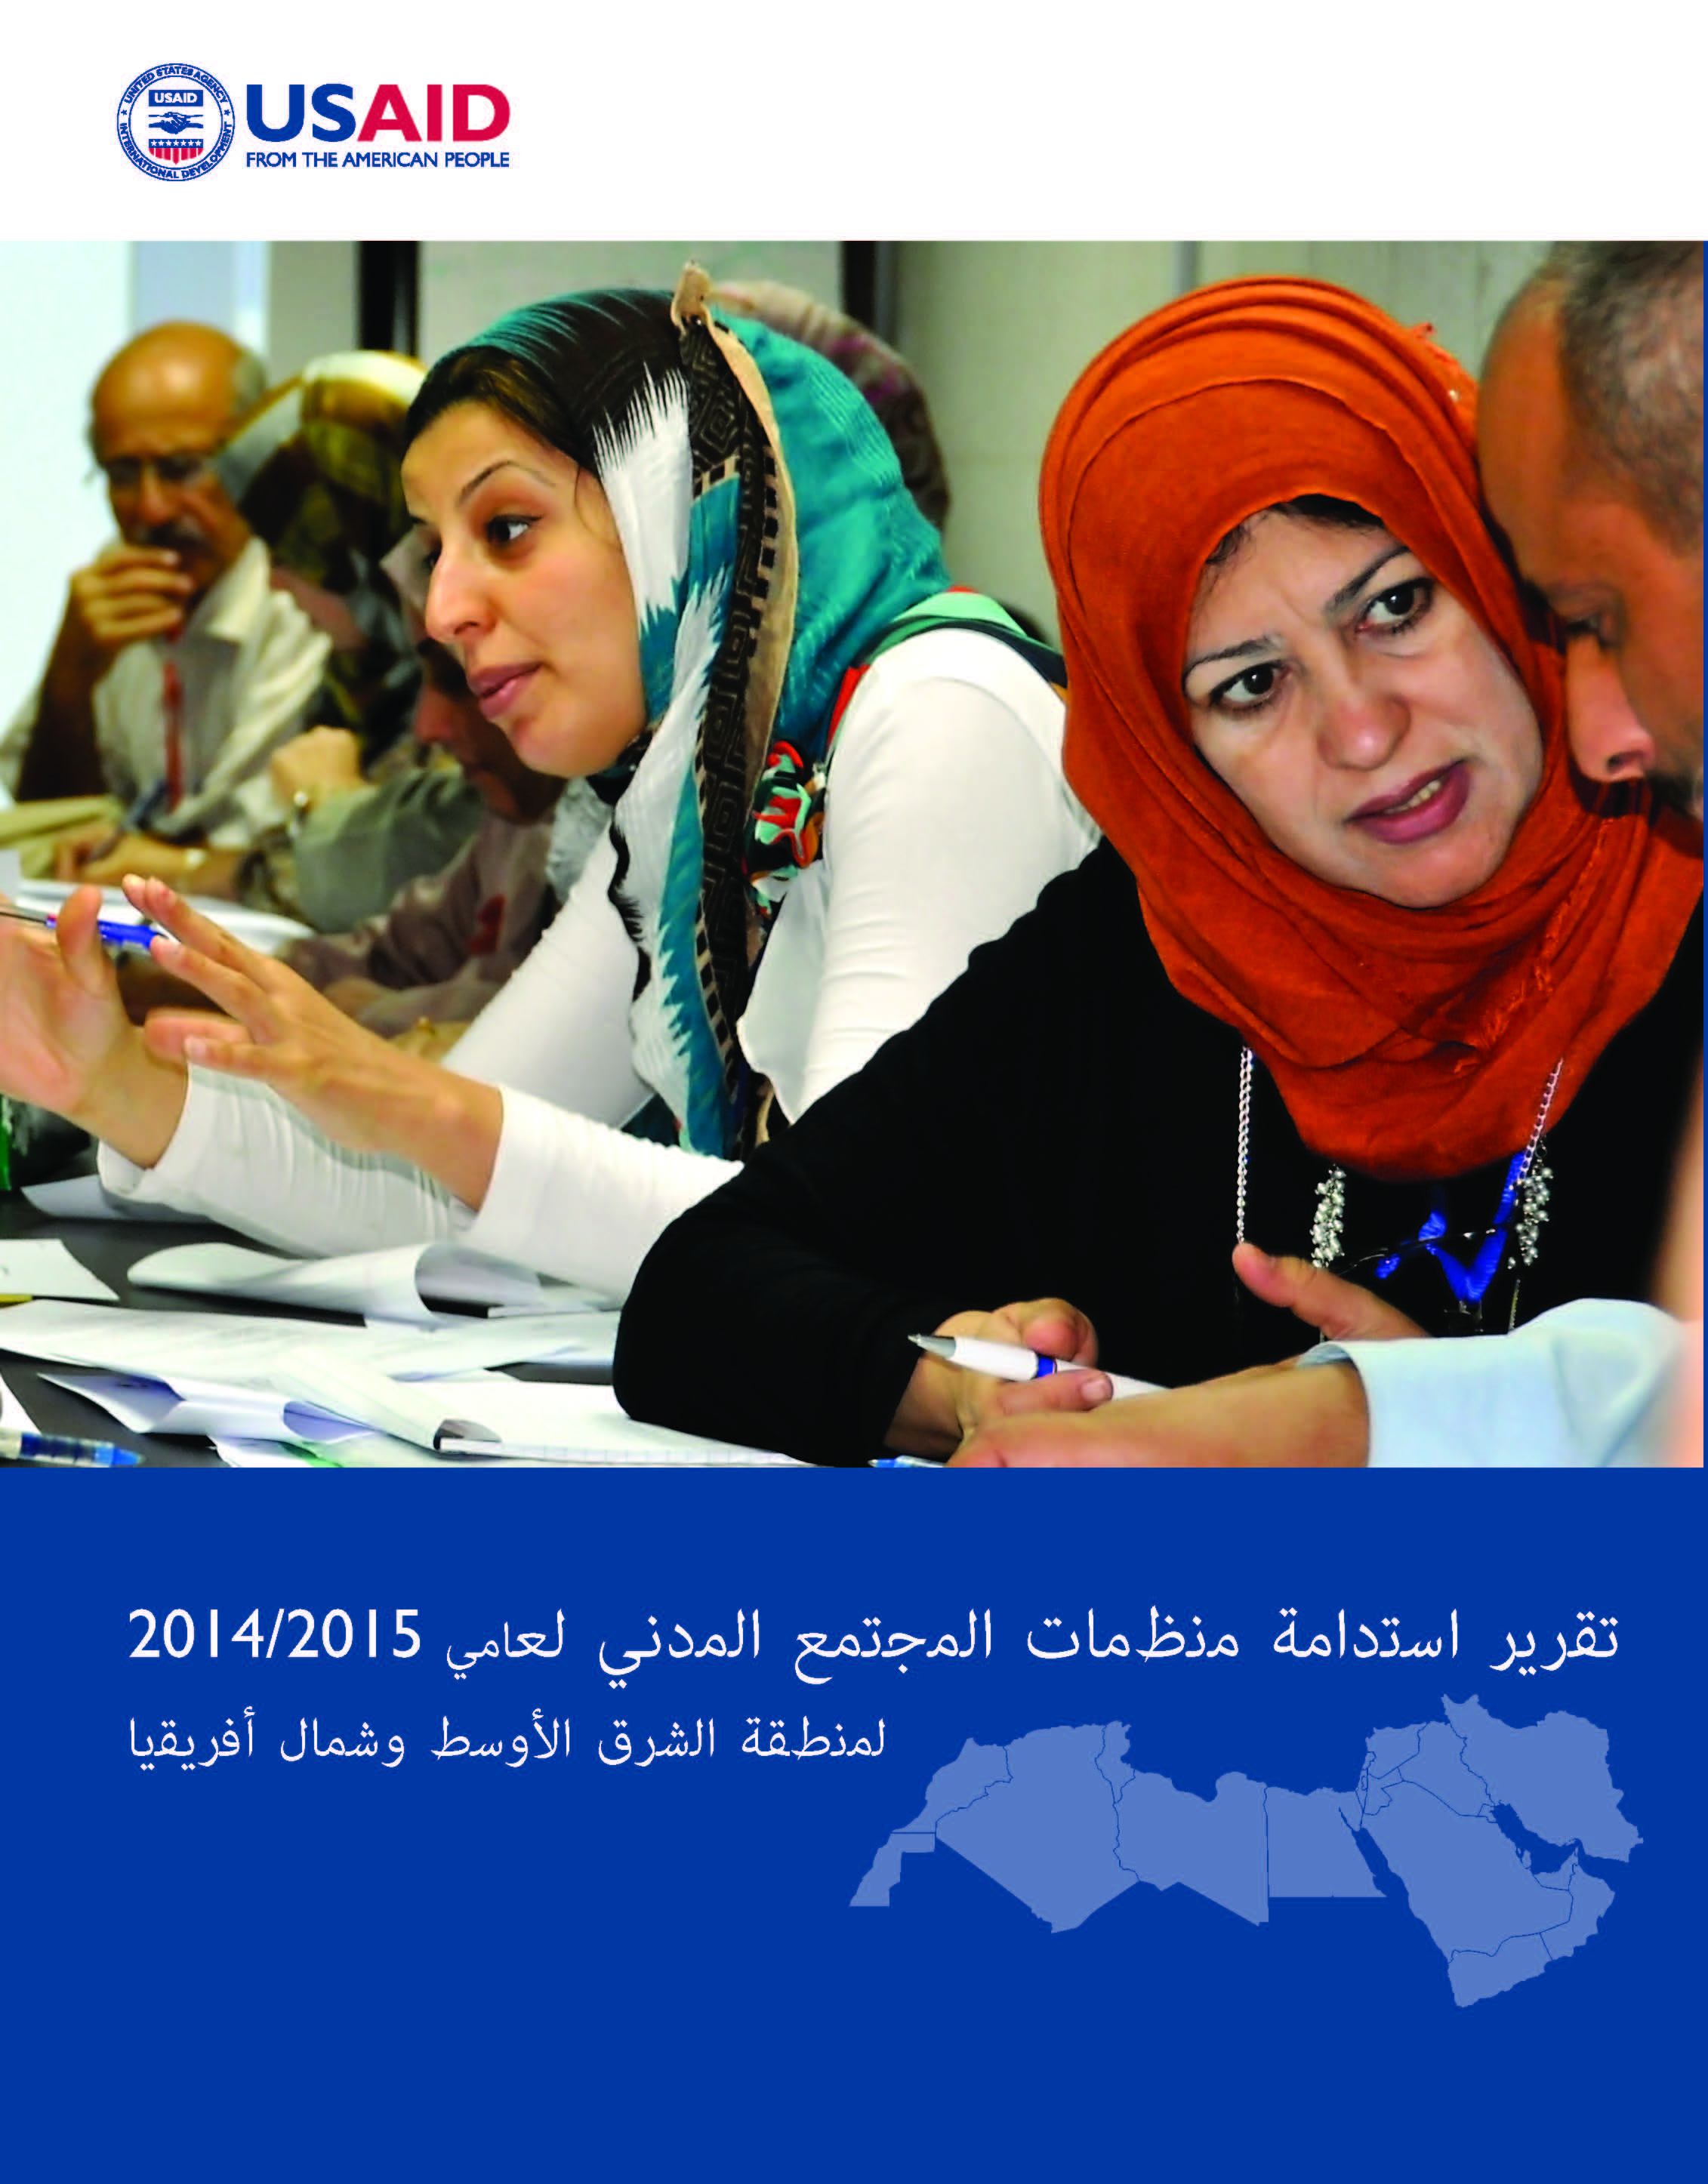 تقرير استدامة منظمات المجتمع المدني لعاميّ 2015/2014 لمنطقة الشرق الأوسط وشمال أفريقيا